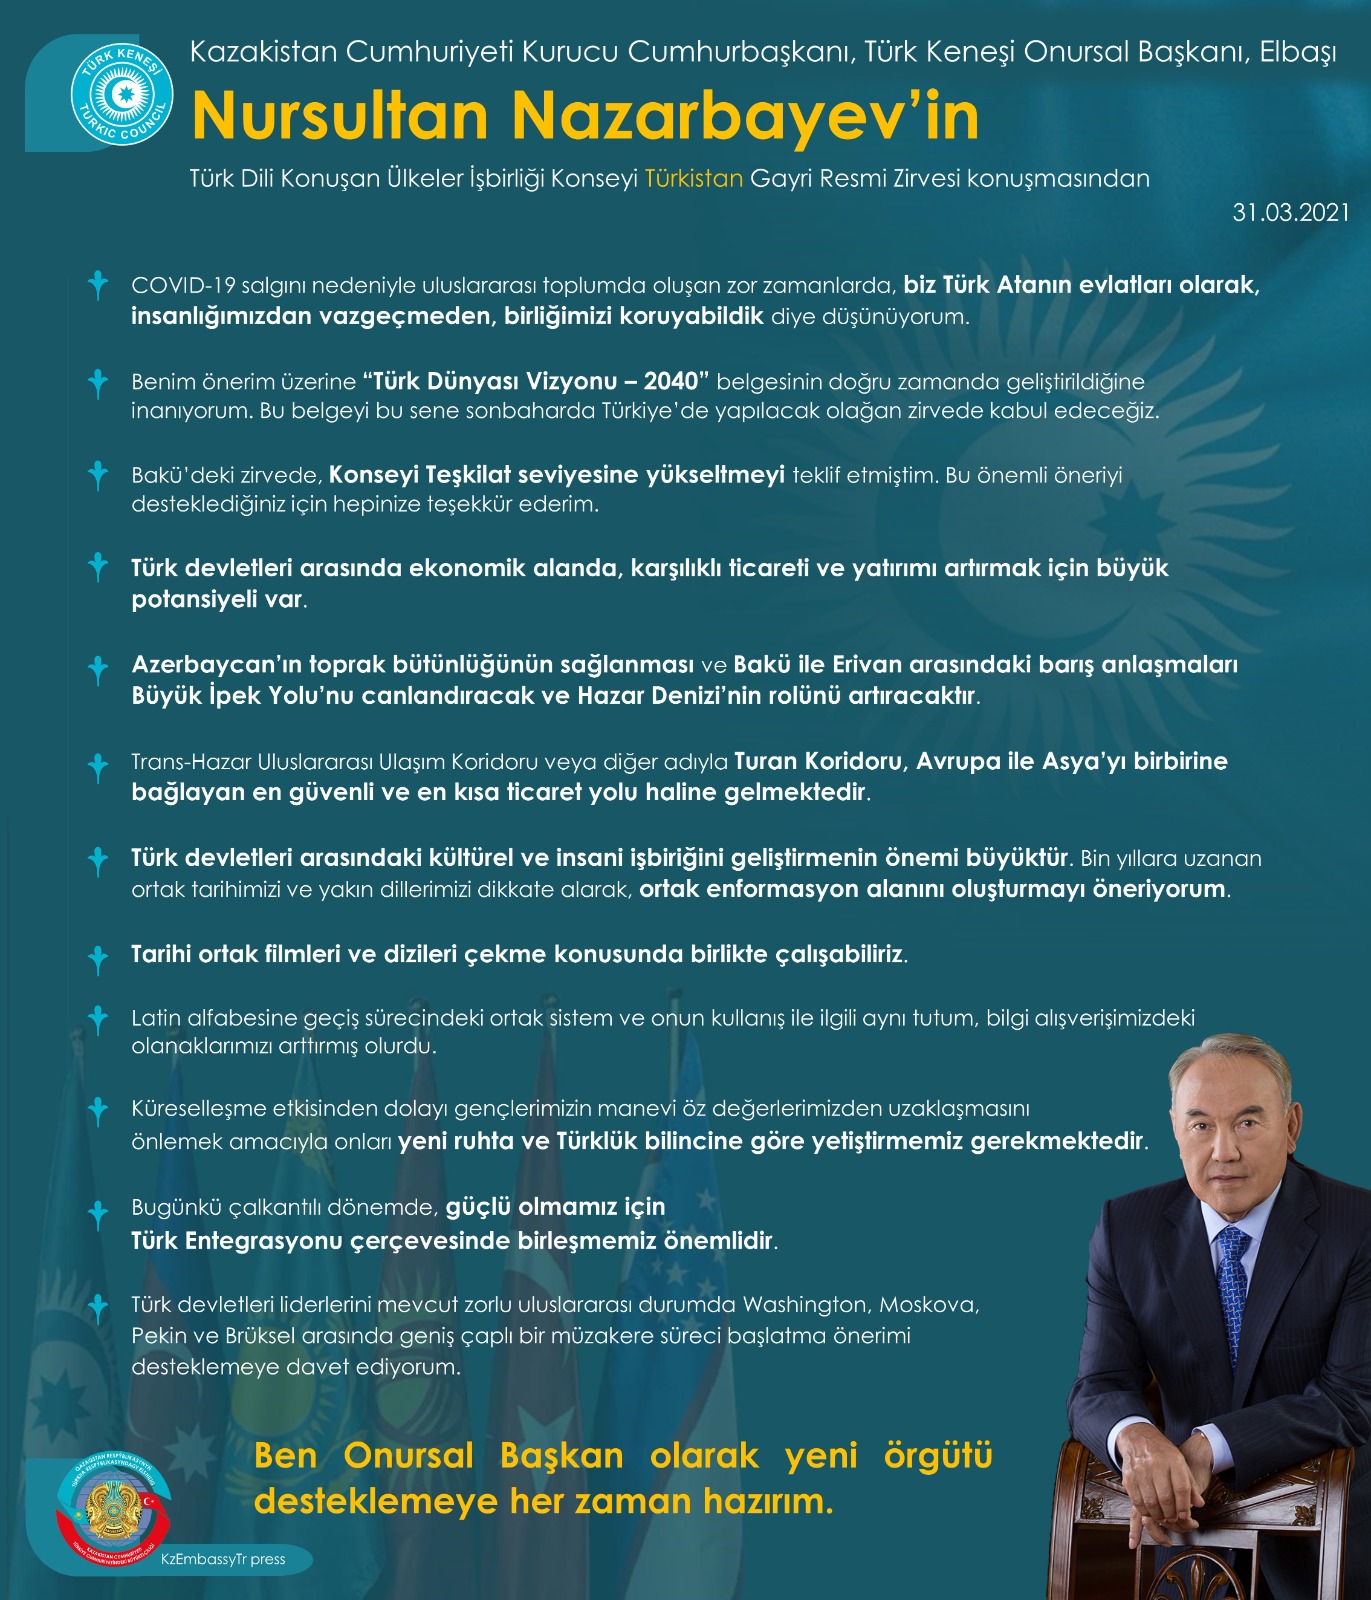 Kazakistan Cumhuriyeti Kurucu Cumhurbaşkanı – Elbaşı, Türk Keneşi Onursal Başkanı Sayın Nursultan Nazarbayev’in Türk Dili Konuşan Ülkeler İşbirliği Konseyi Gayri Resmi Türkistan Zirvesi konuşmasından